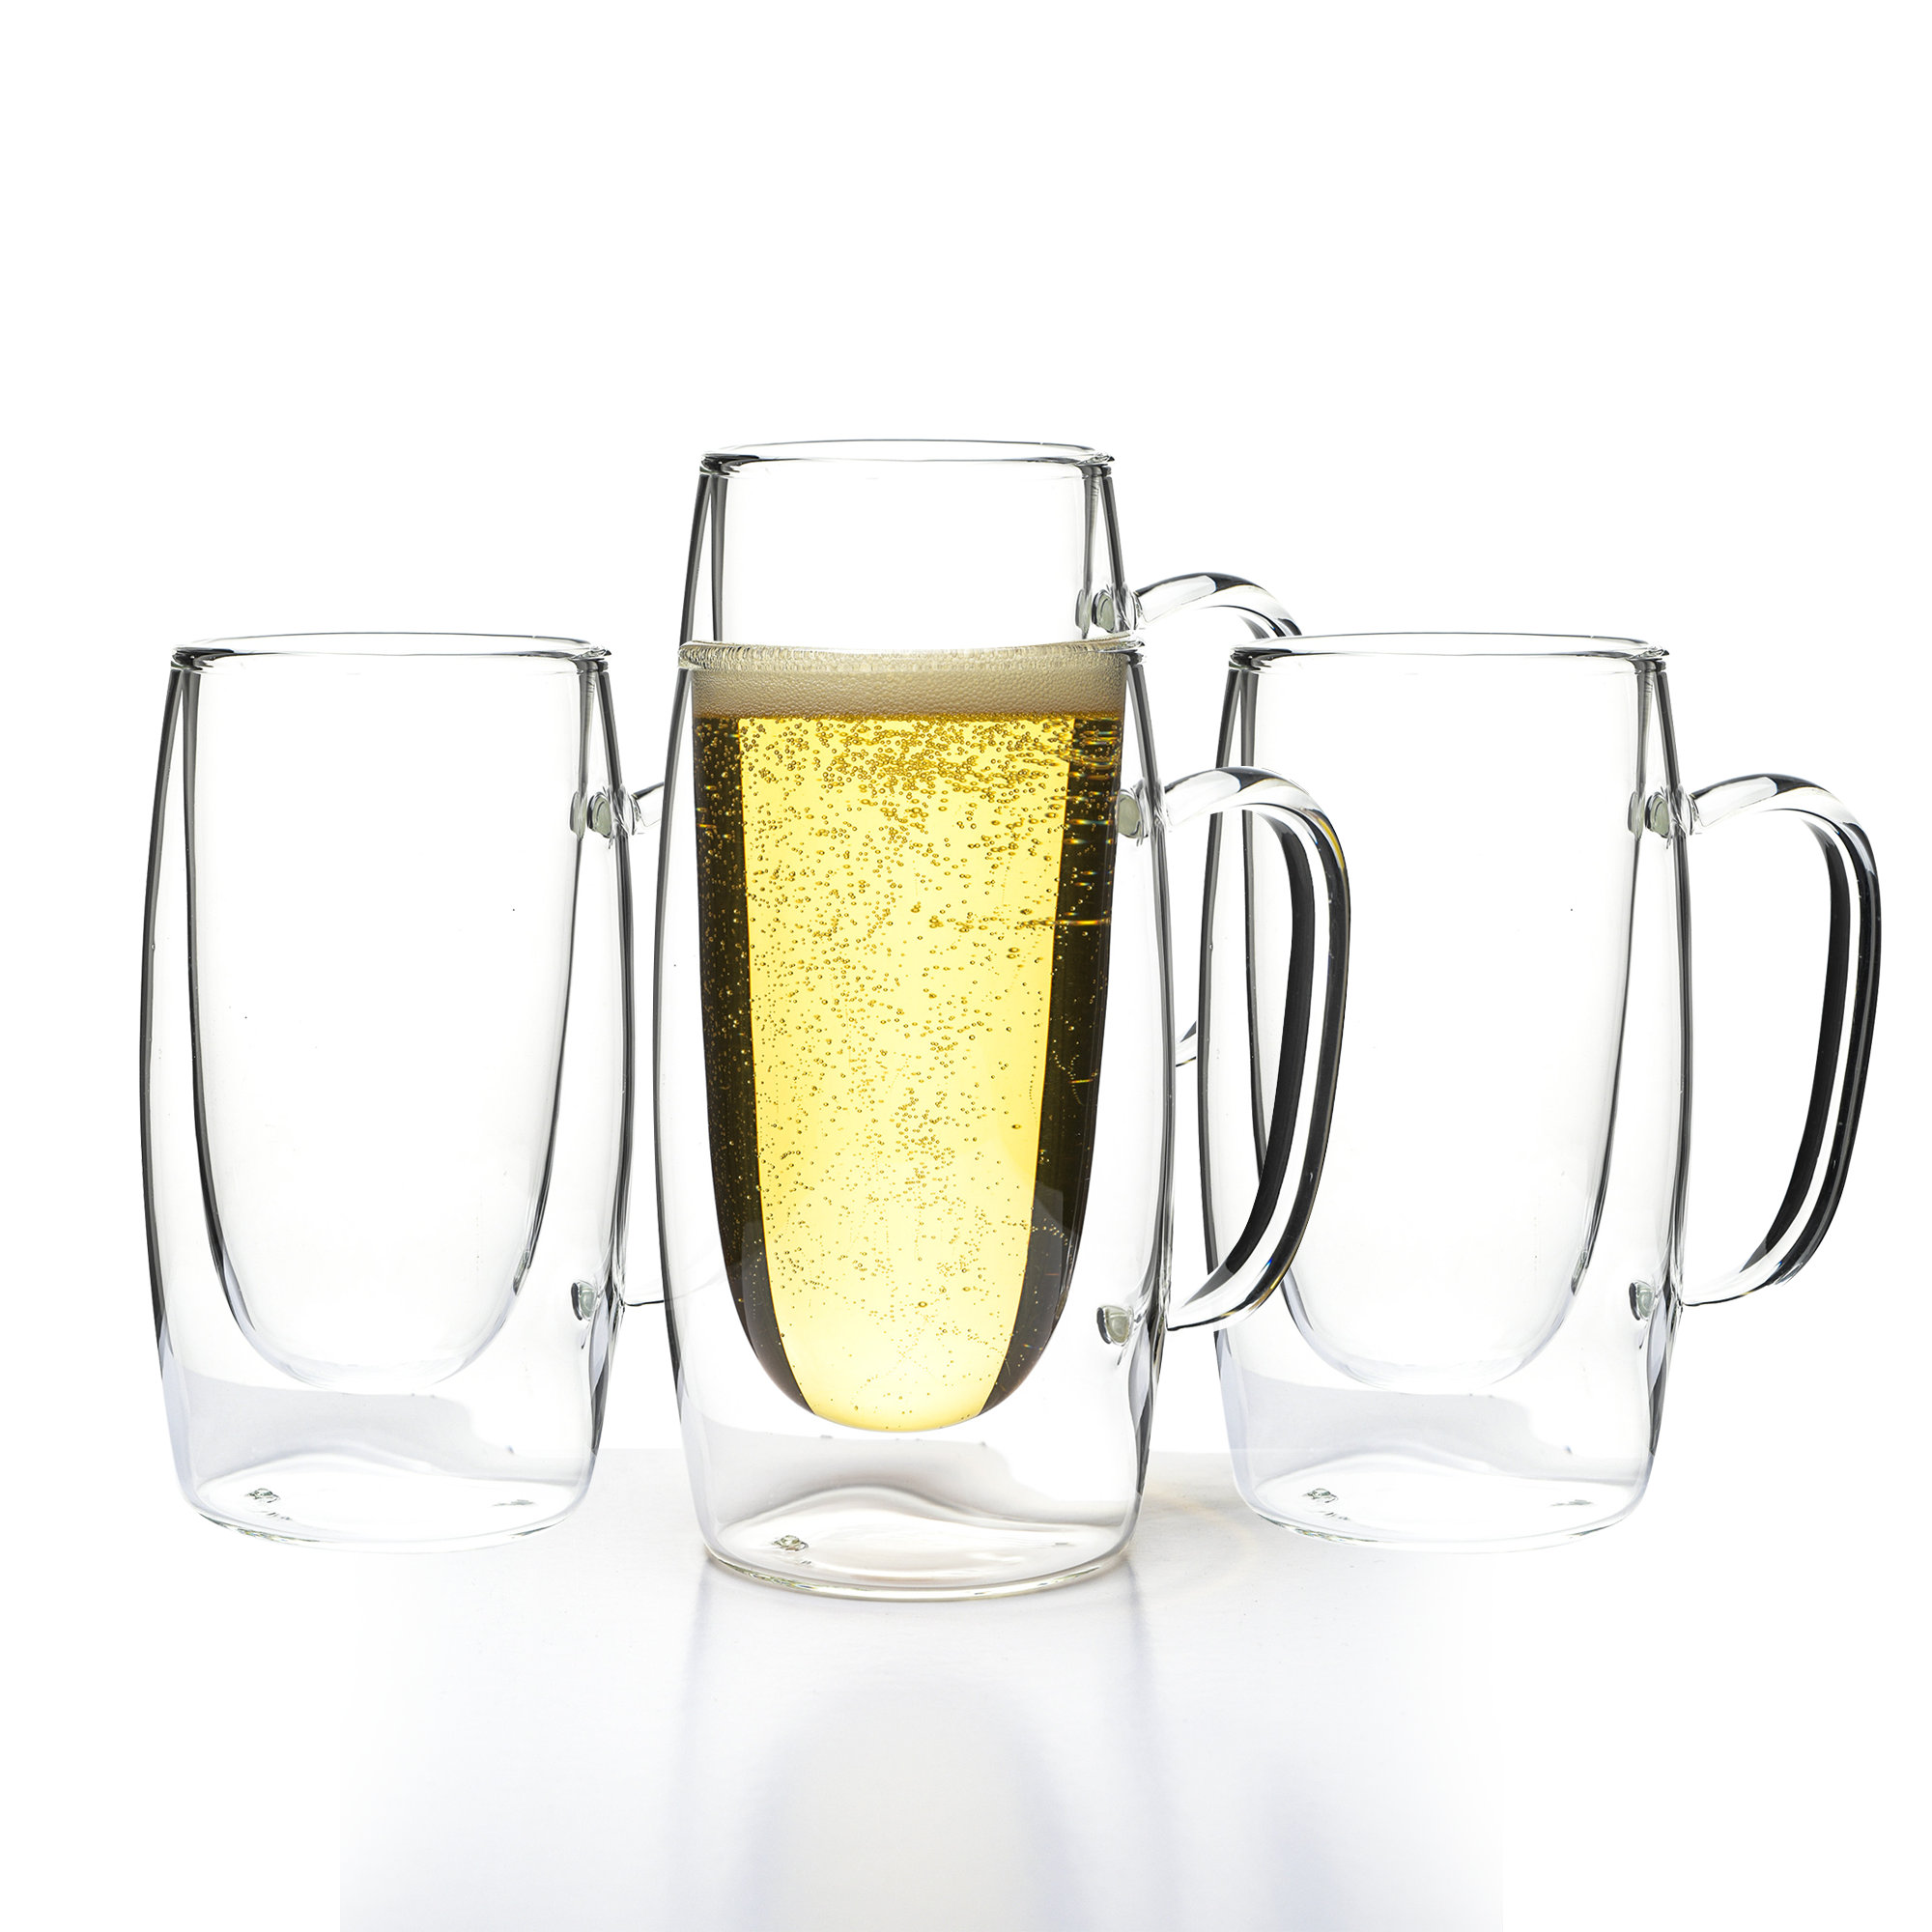 https://assets.wfcdn.com/im/92647691/compr-r85/2320/232098883/orren-ellis-4-piece-125oz-glass-beer-mug-glassware-set.jpg